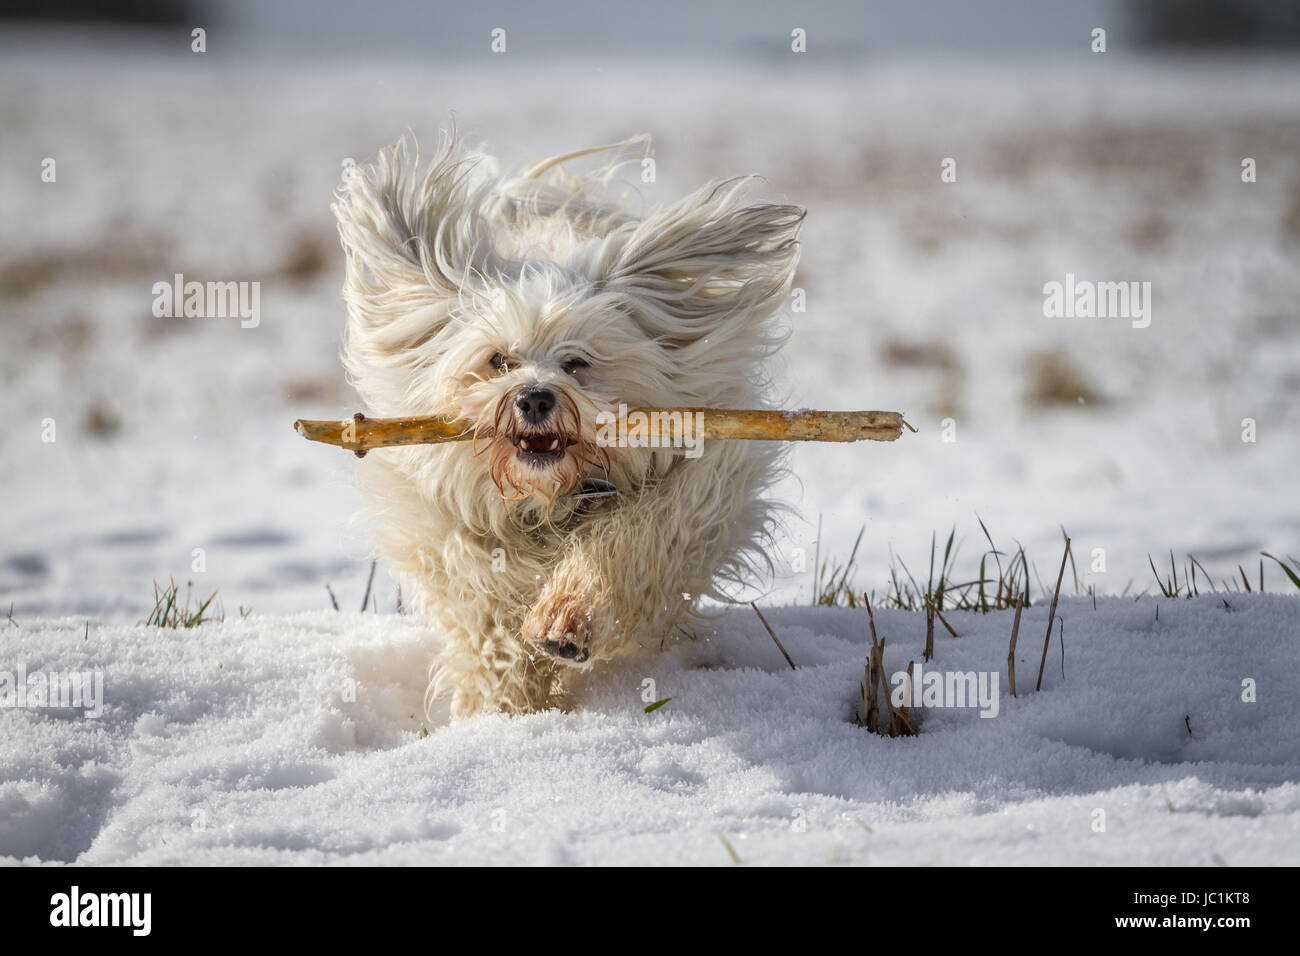 Ein weißer kleiner Hund apportiert einen Stock im Schnee. Stock Photo